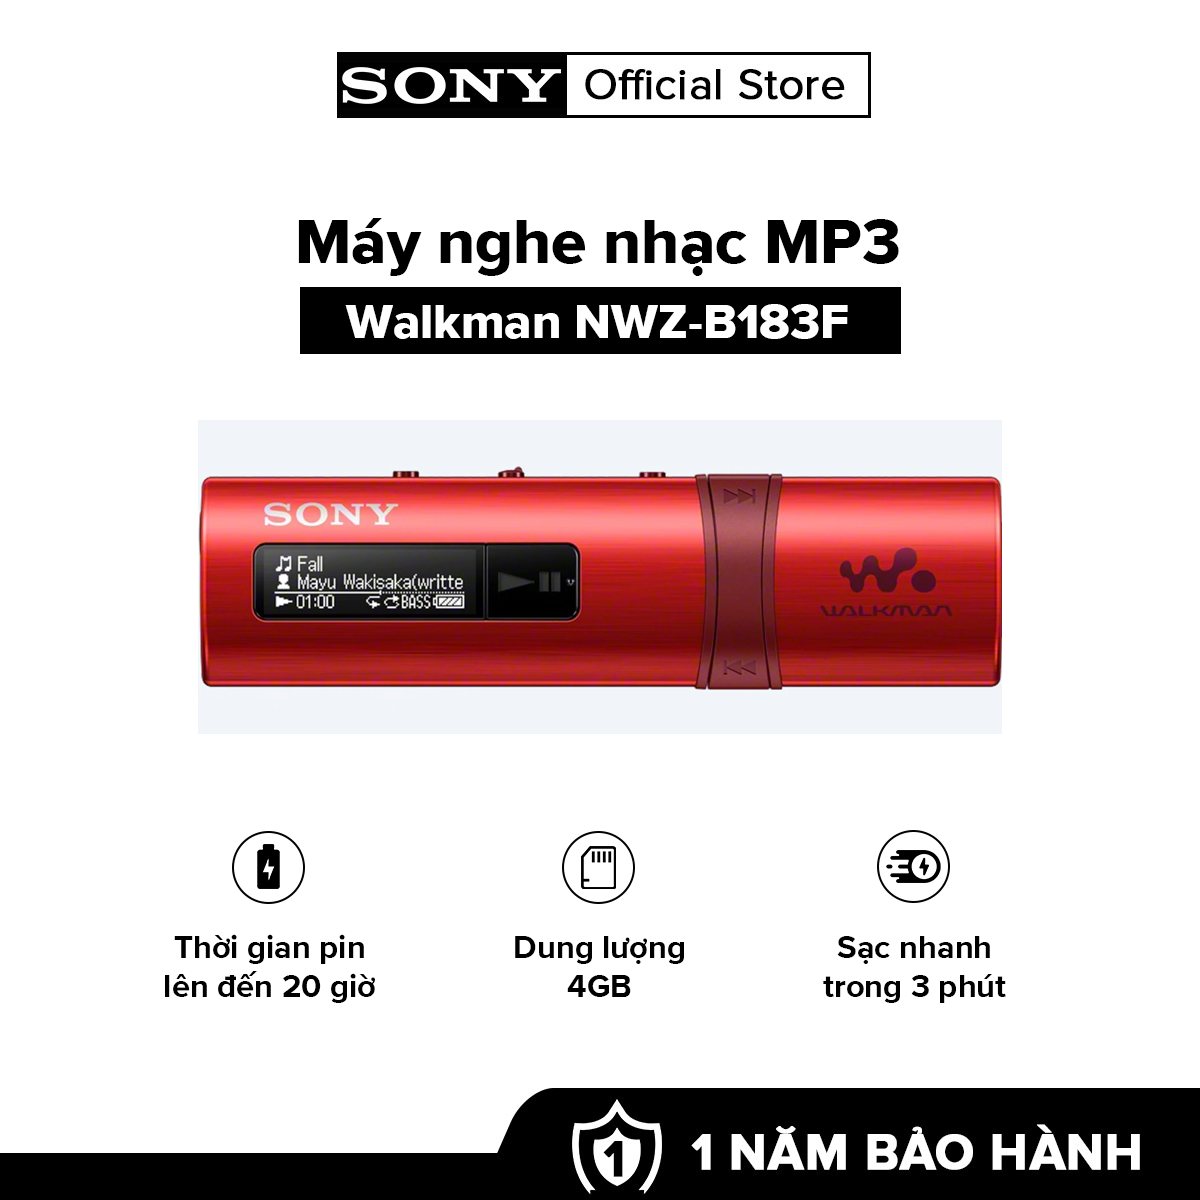 [HÀNG CHÍNH HÃNG] MÁY NGHE NHAC MP3 Walkman tích hợp USB NWZ-B183F Dung lượng 4GB cho khoảng 900 bài hát Thời gian sử dụng pin lên đến 20 giờ Sạc nhanh trong 3 phút